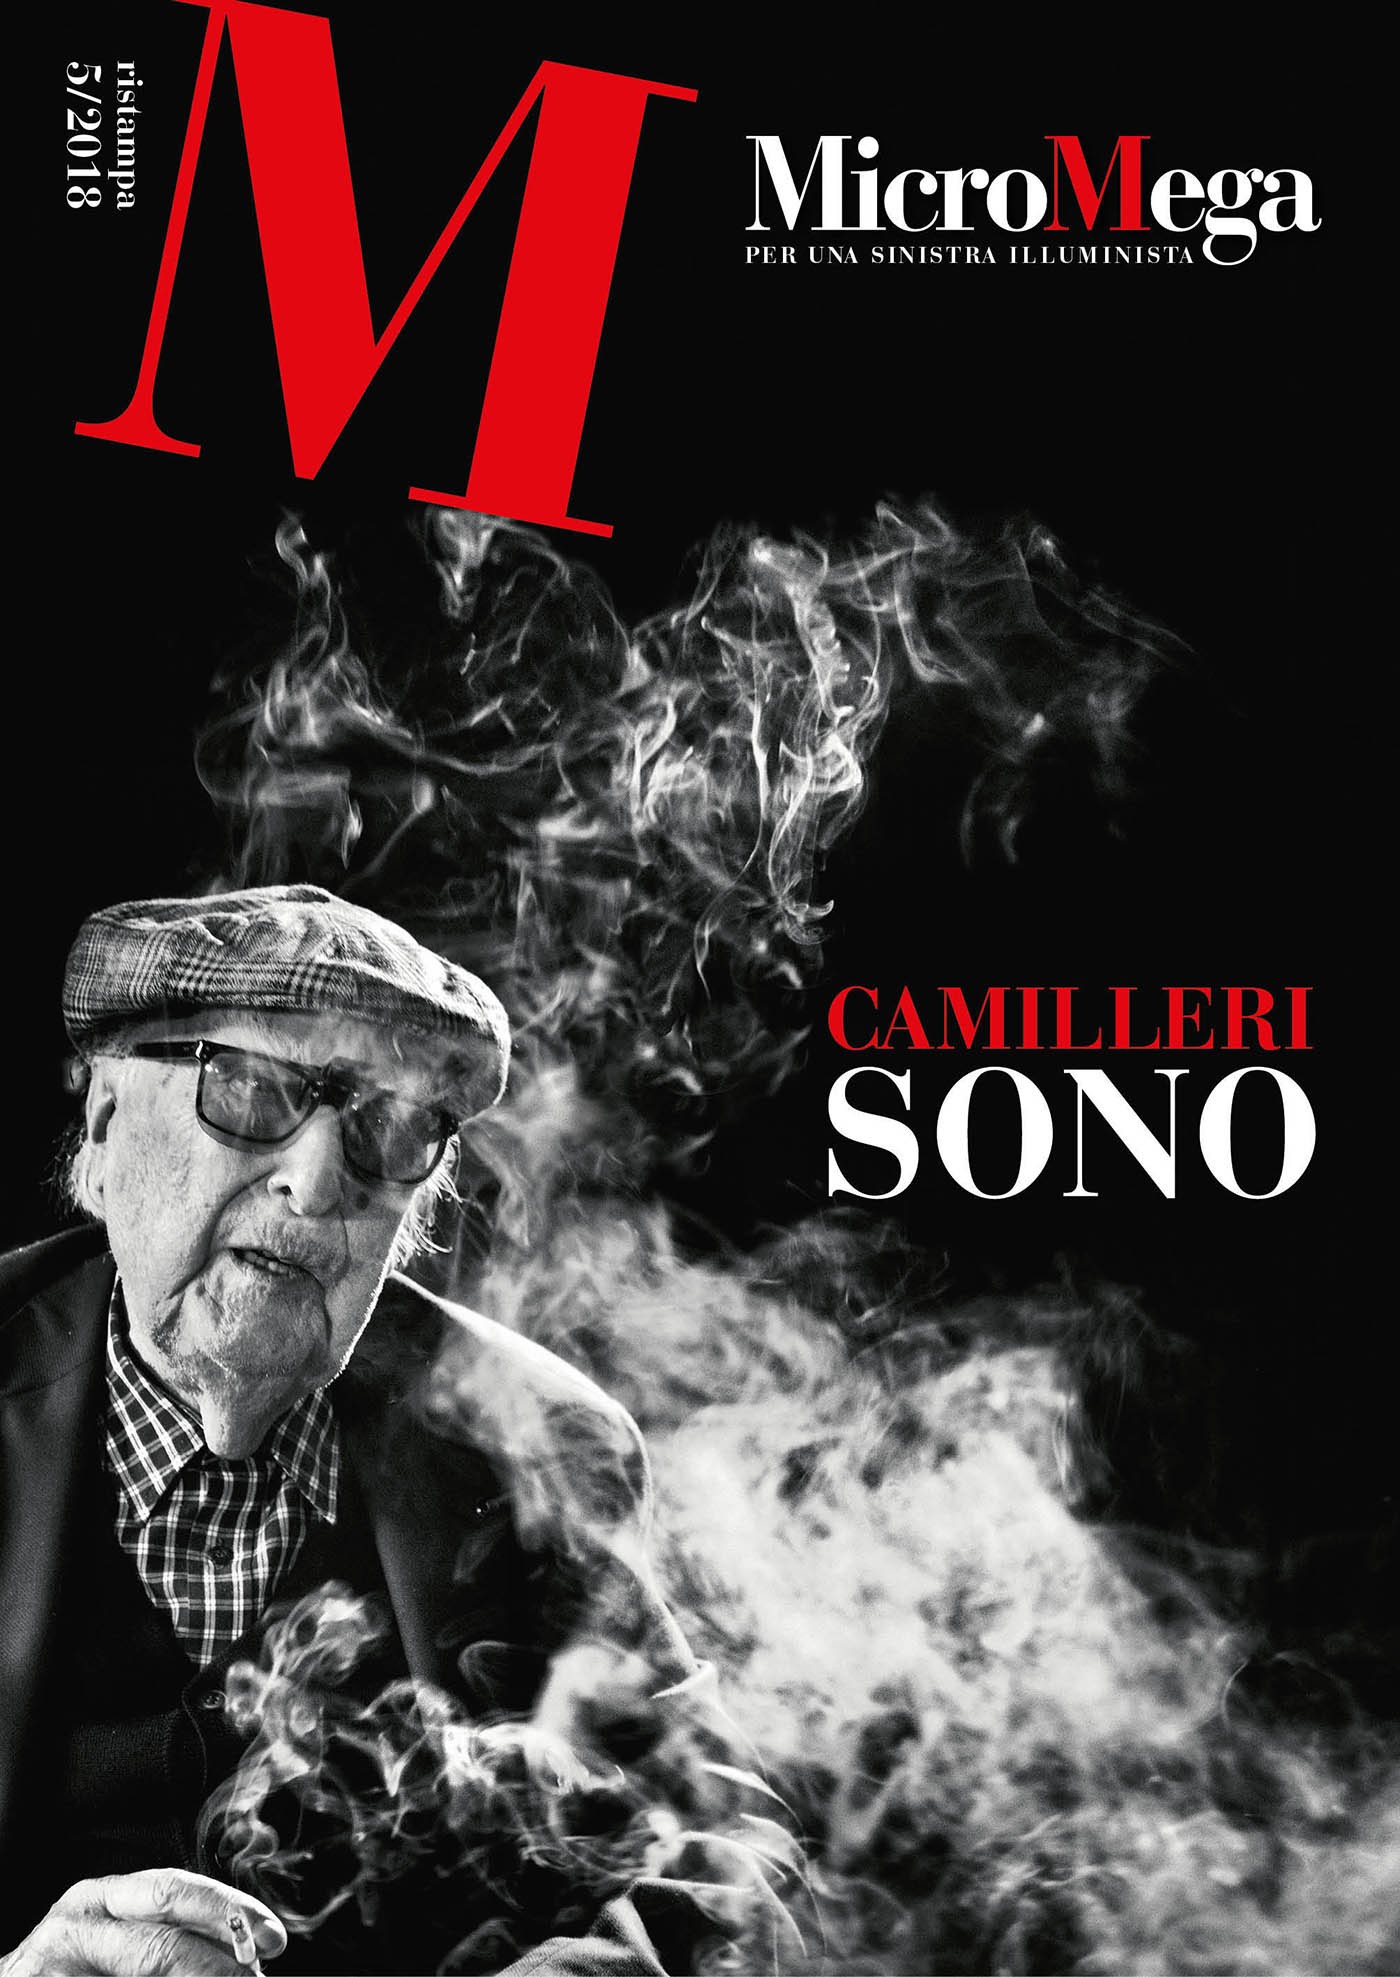 Micromega ristampa 5 / 2018 "Camilleri sono" - Librerie.coop